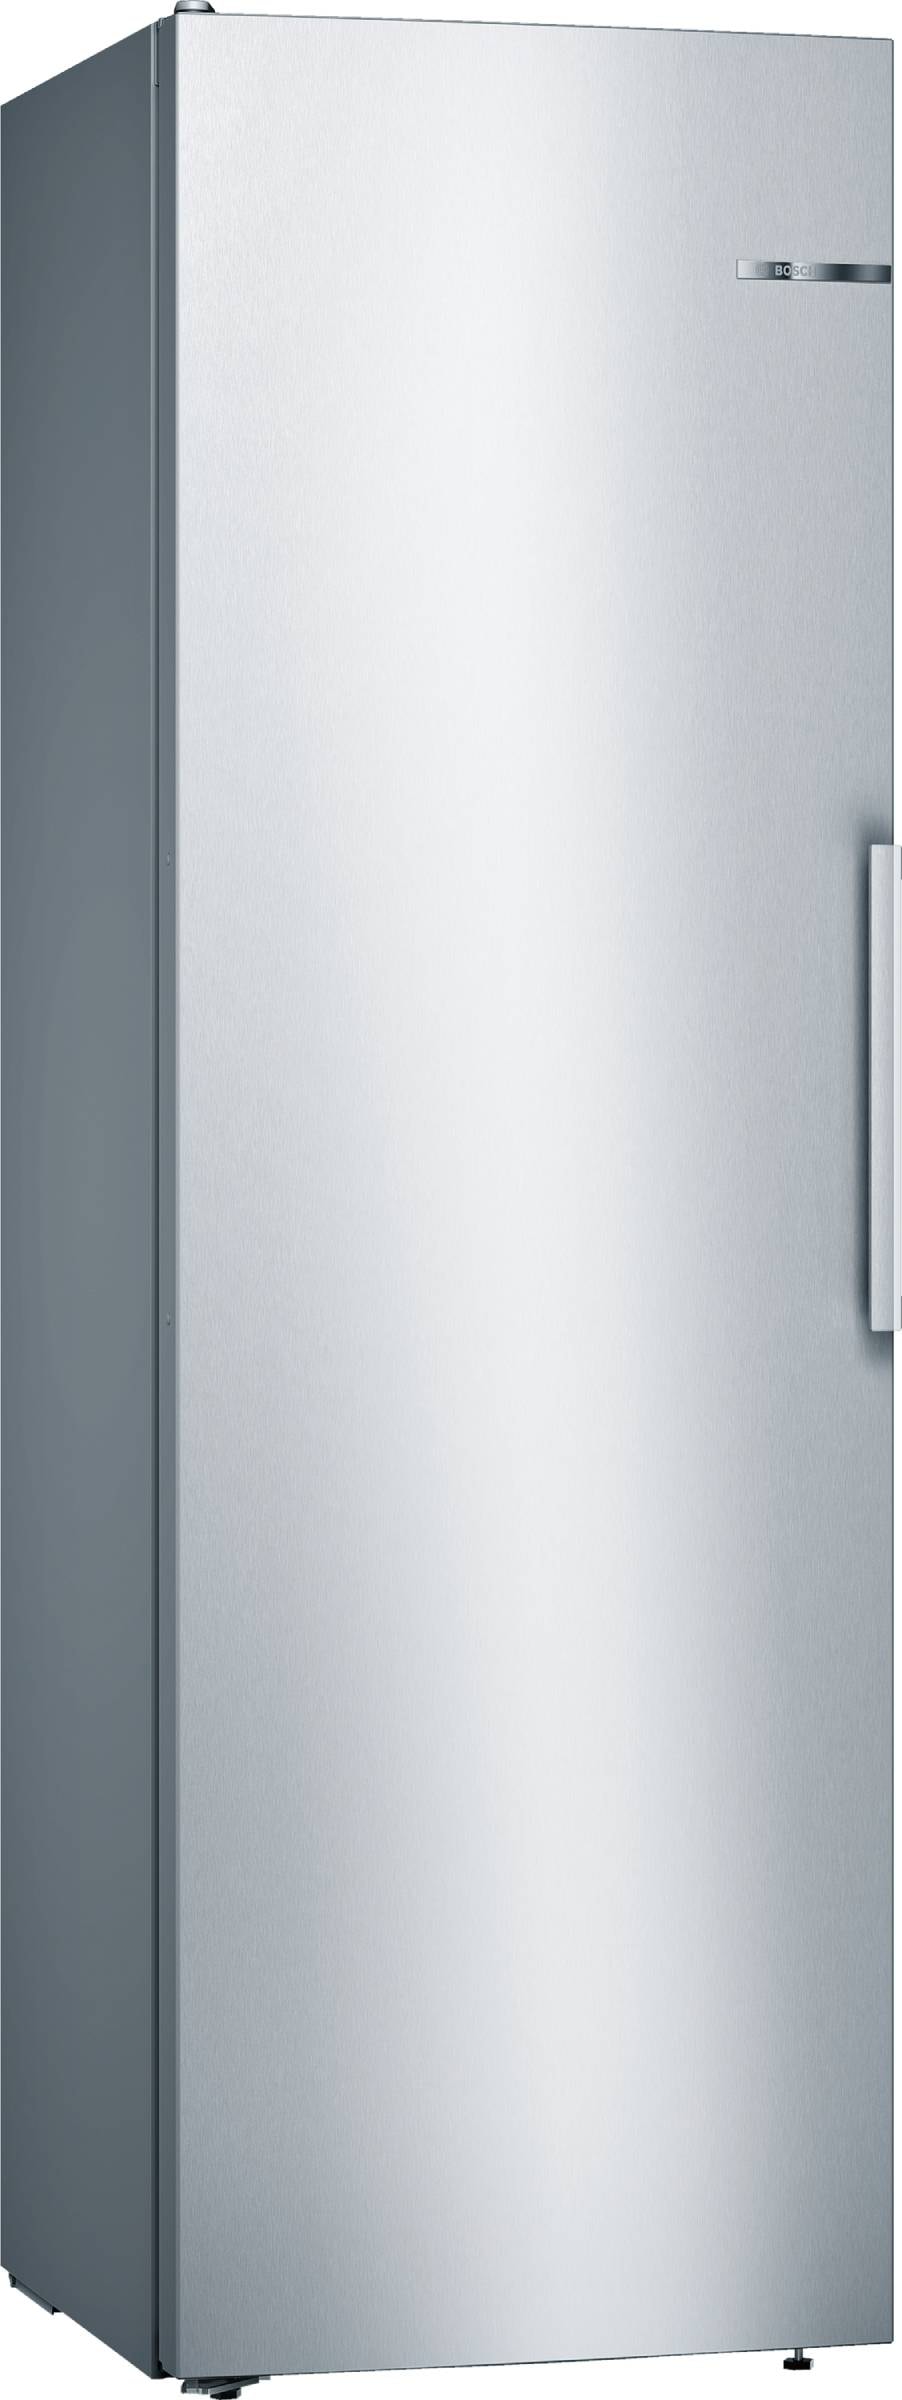 BOSCH Réfrigérateur 1 porte   KSV36VLDP